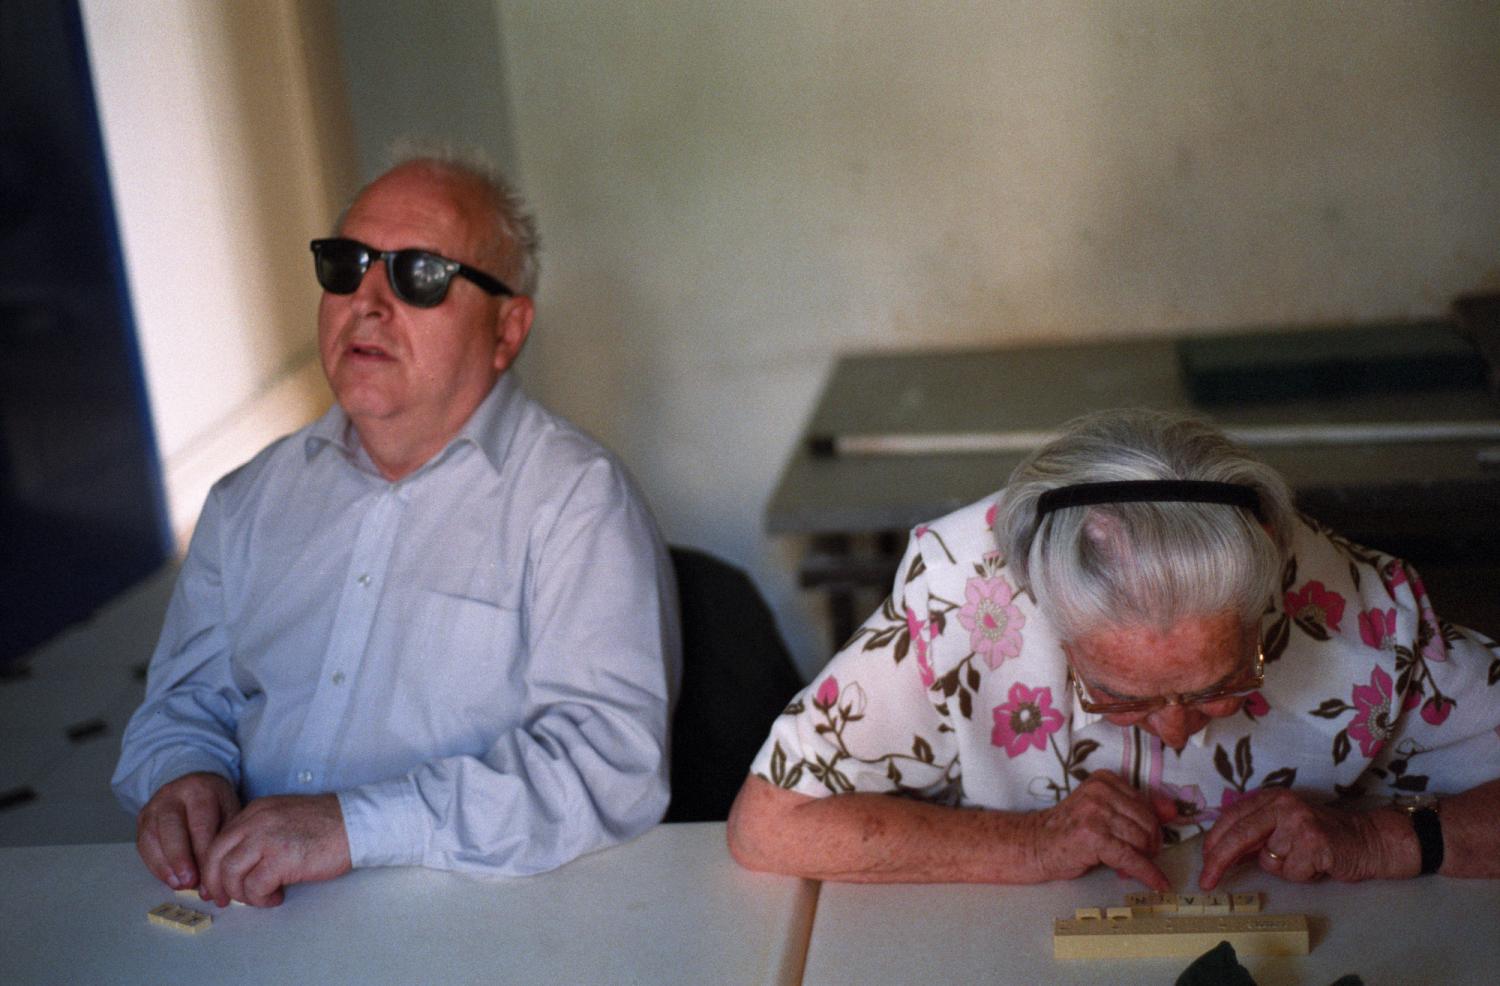 Bruno, lunettes noires et chemise bleues, lit les lettres de ses pions de scrabble avec les mains, tandis qu'à sa gauche Madeleine en chemise rose se penche vers les siens pour les déchiffrer avec les yeux. Paris, octobre 2005.